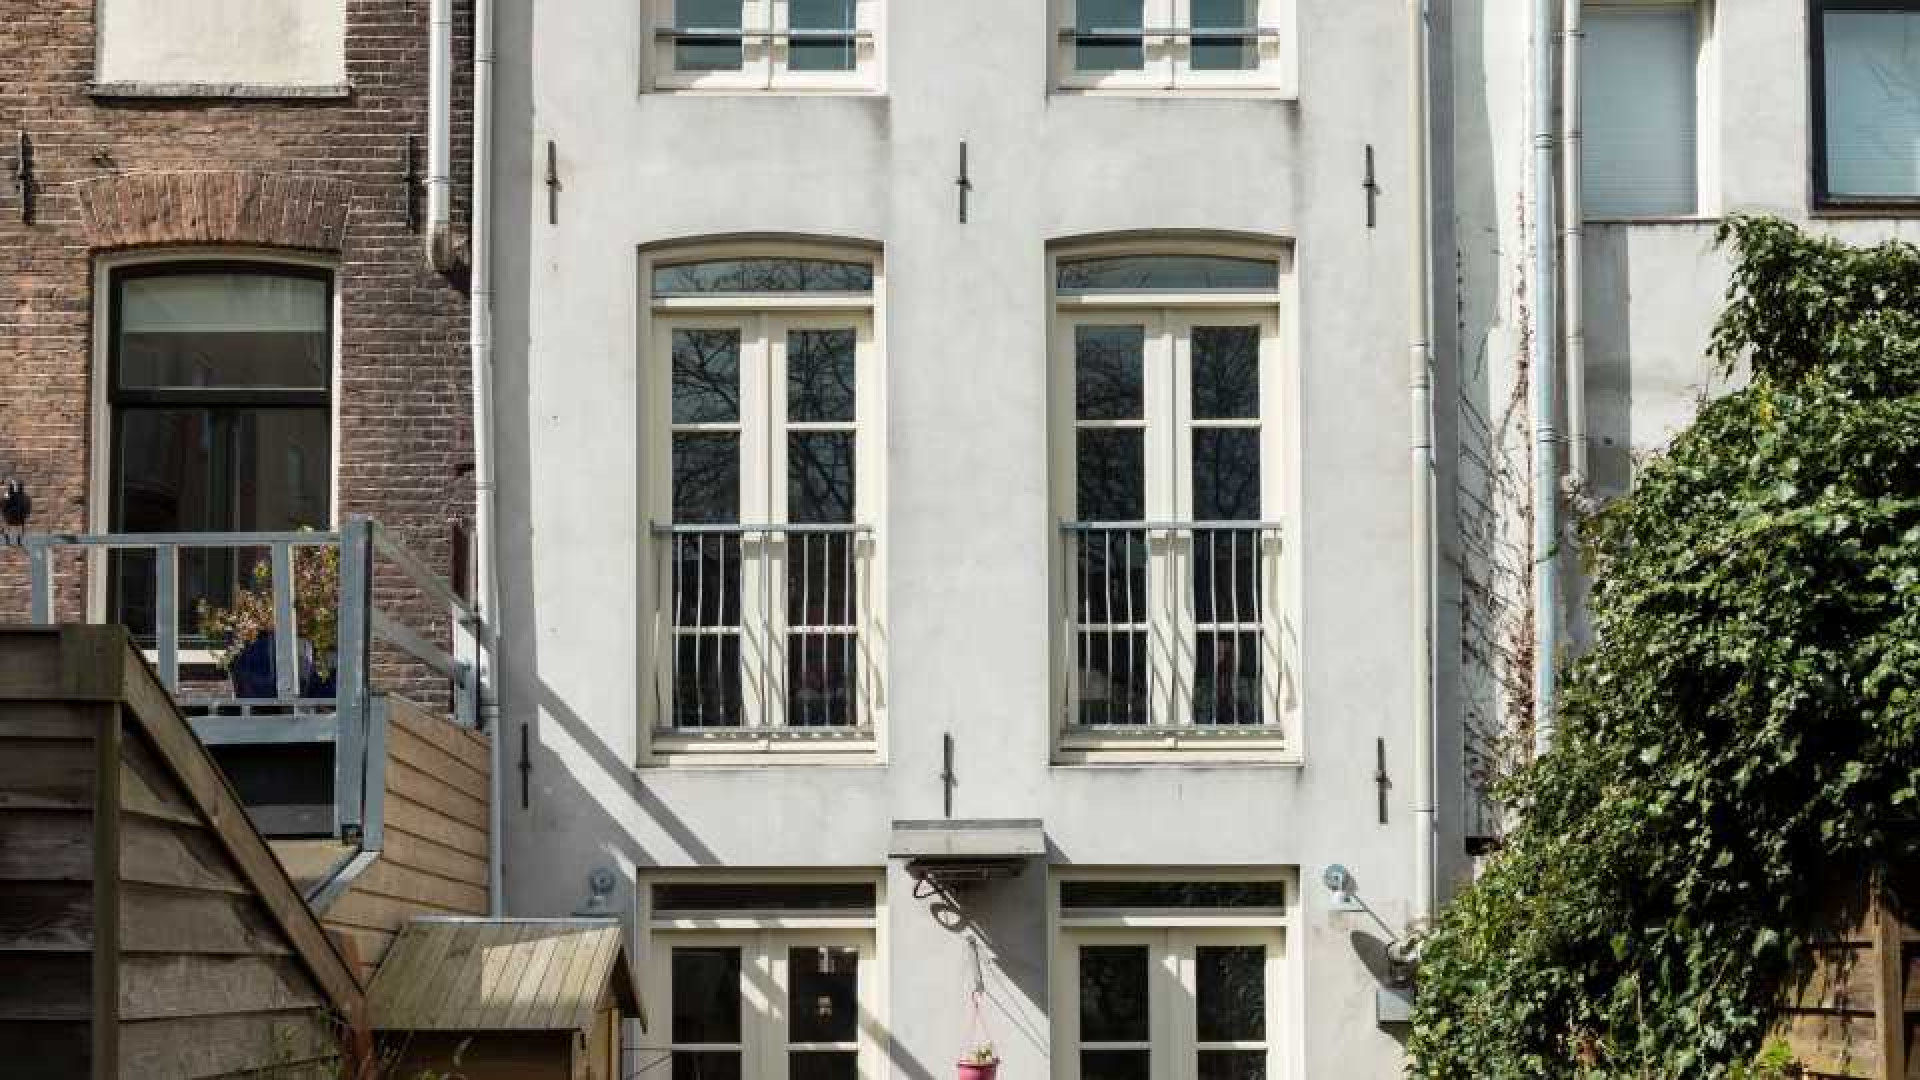 Oud PvdA topman Rob Oudkerk zet zijn scheidingshuis te koop. Zie foto's 18